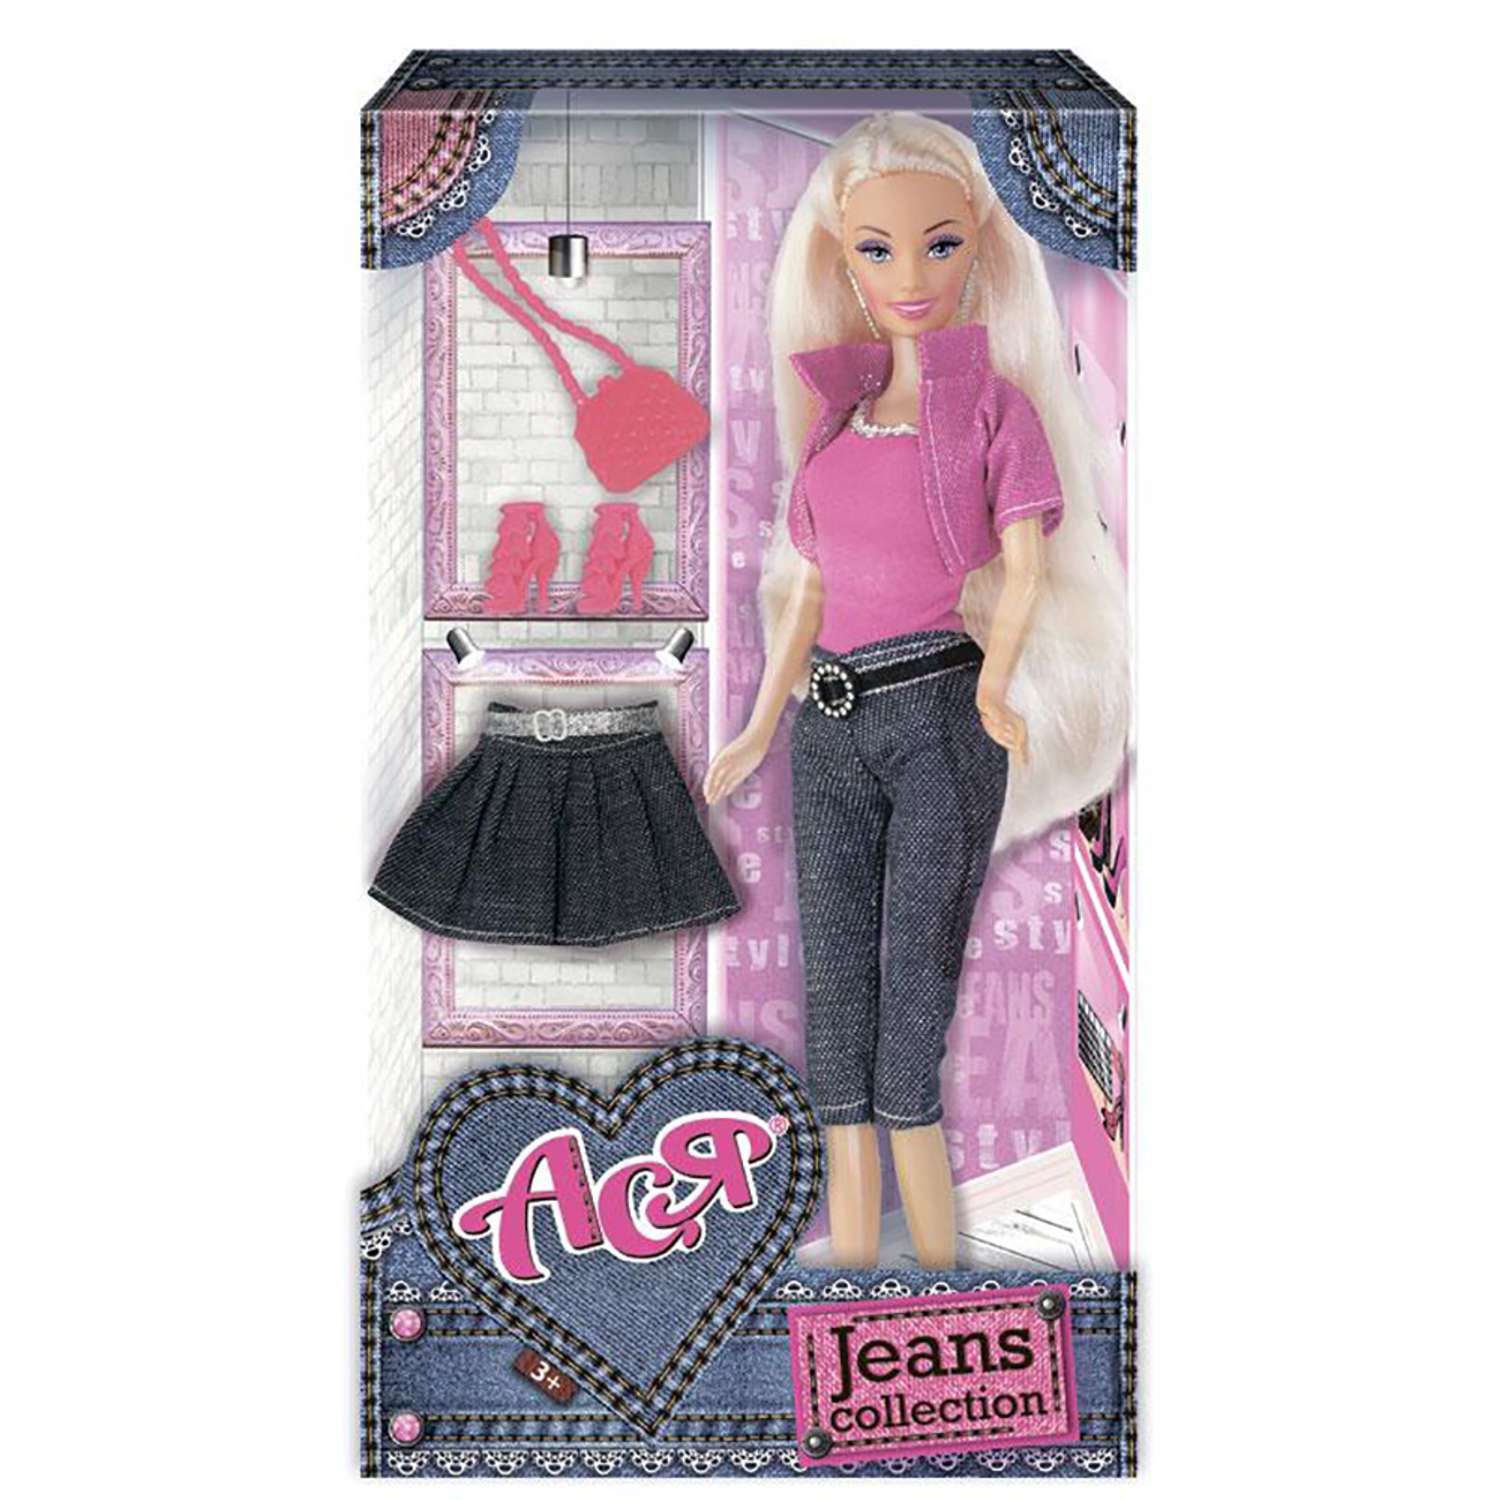 Кукла ToysLab Ася Джинсовая коллекция 28 см дизайн 1 35089 - фото 2